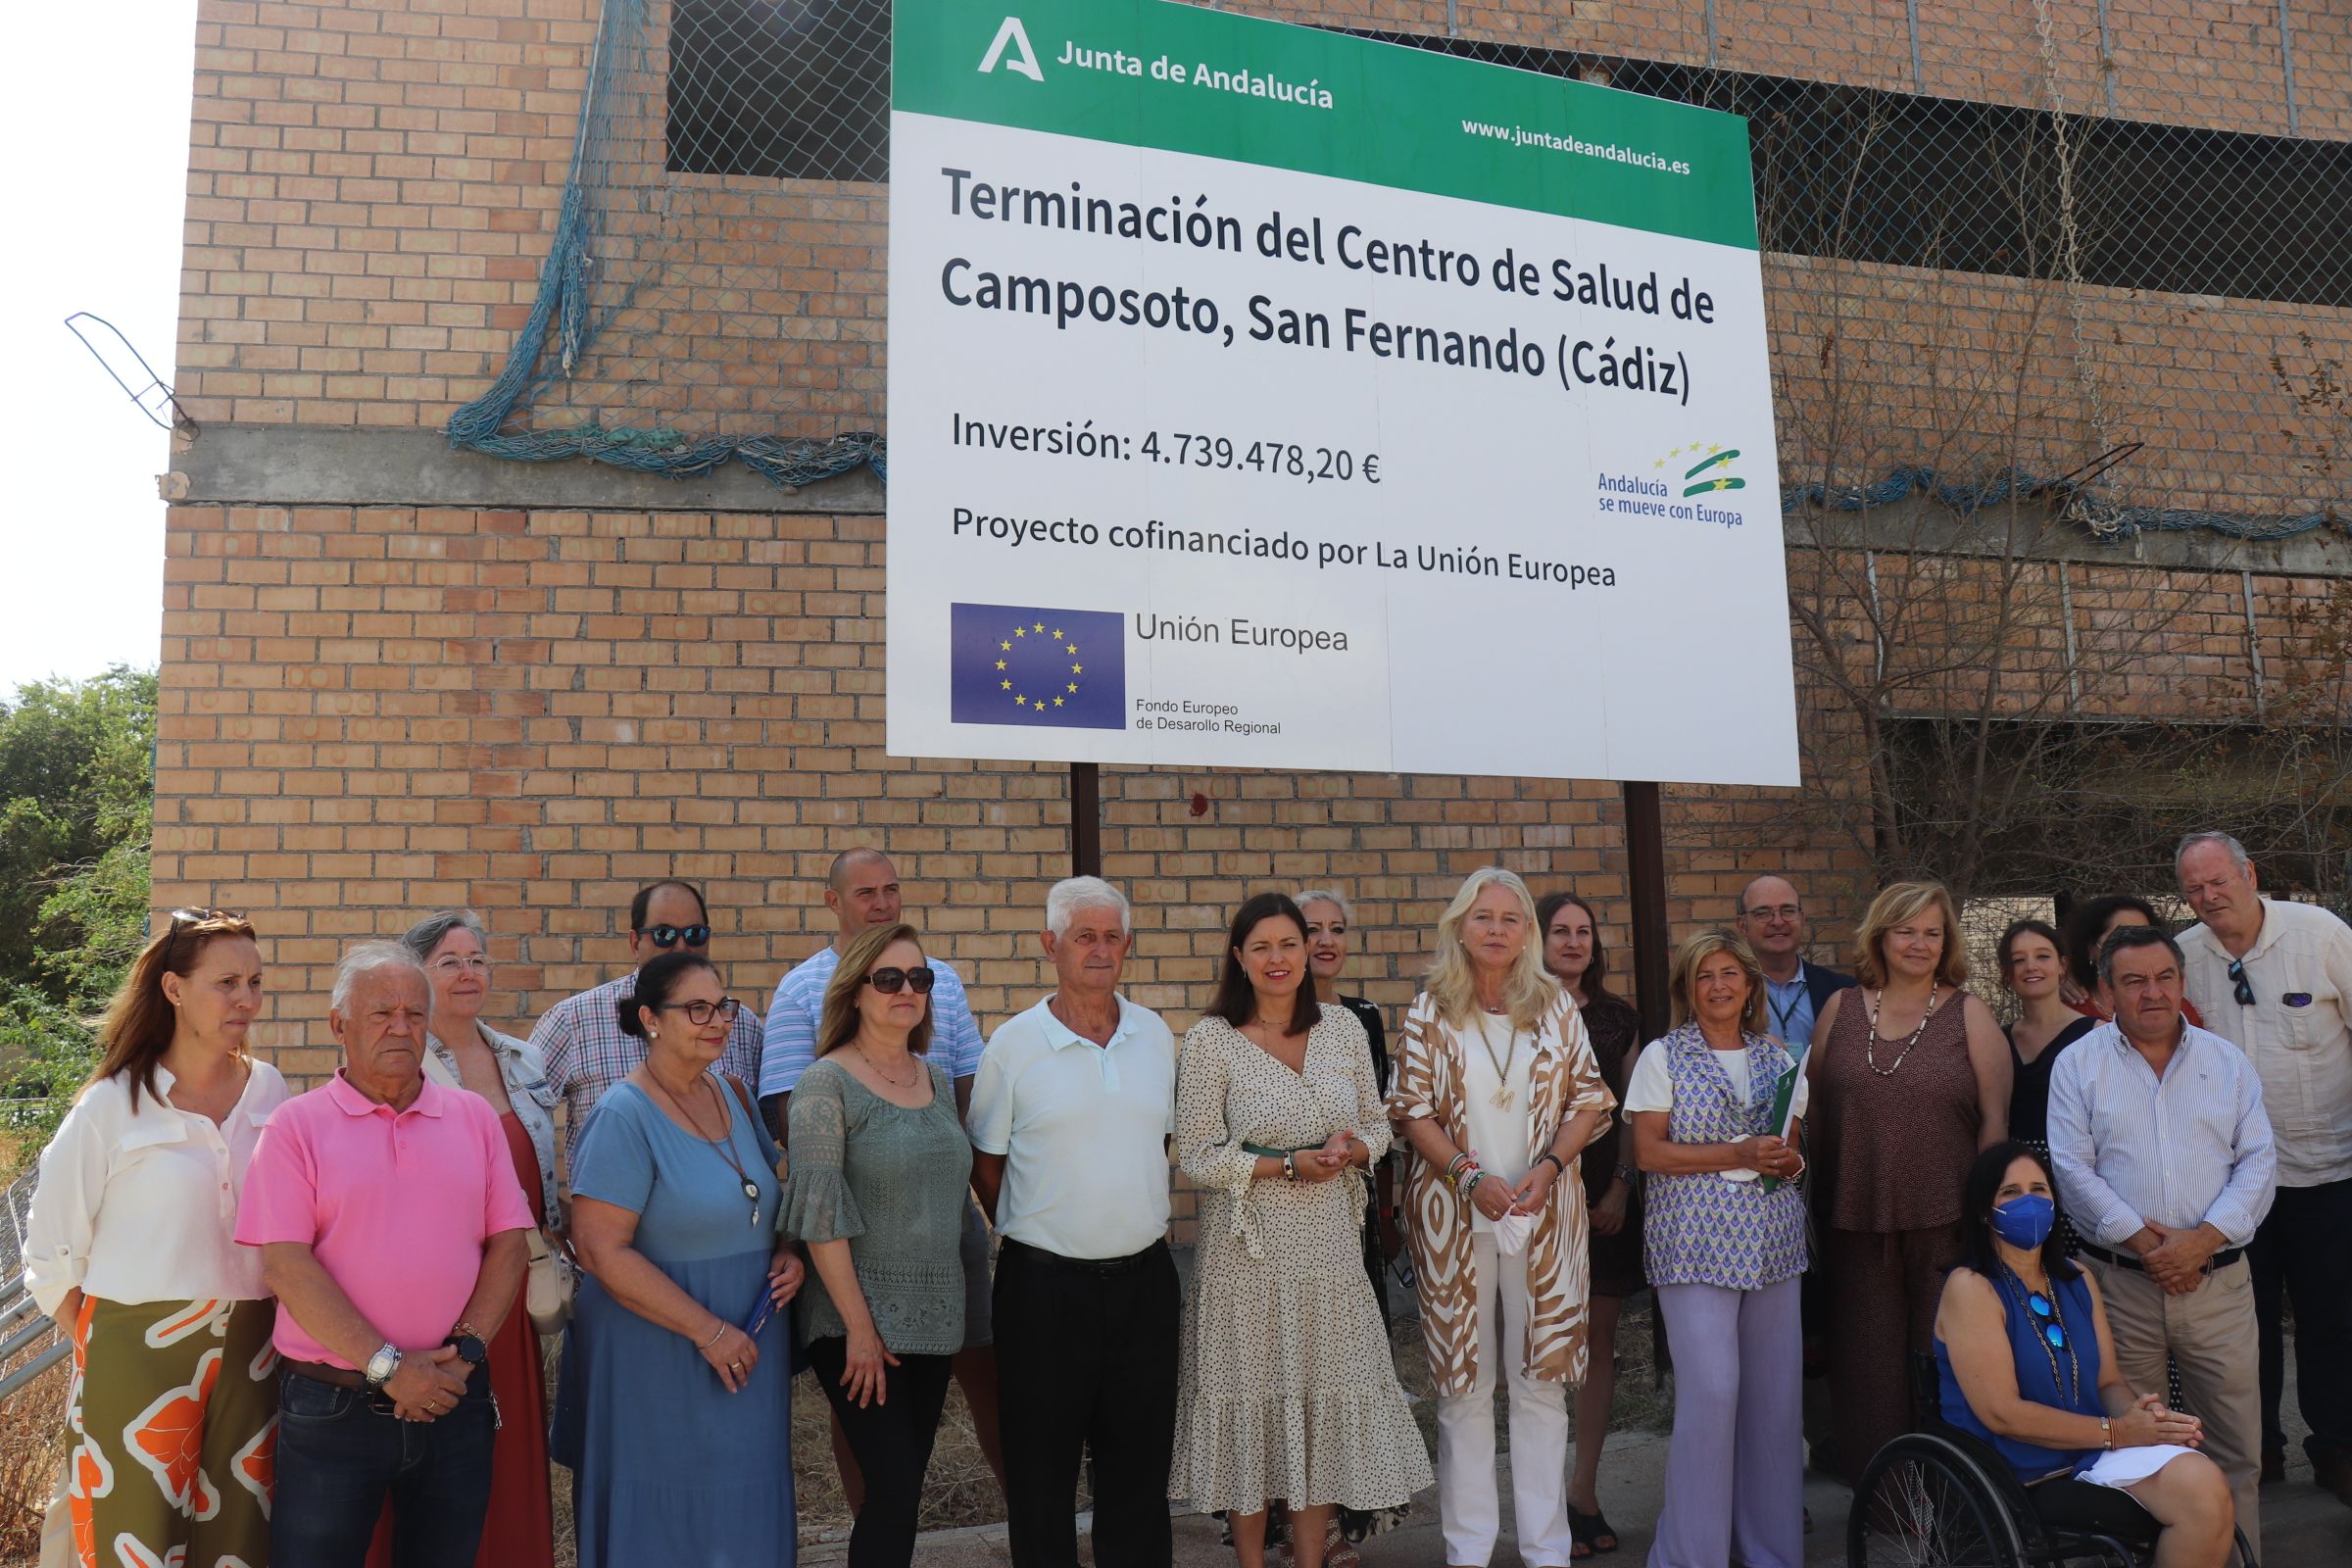 Los representantes de las administraciones públicas junto al cartel que anuncia la última fase de las obras de Camposoto.